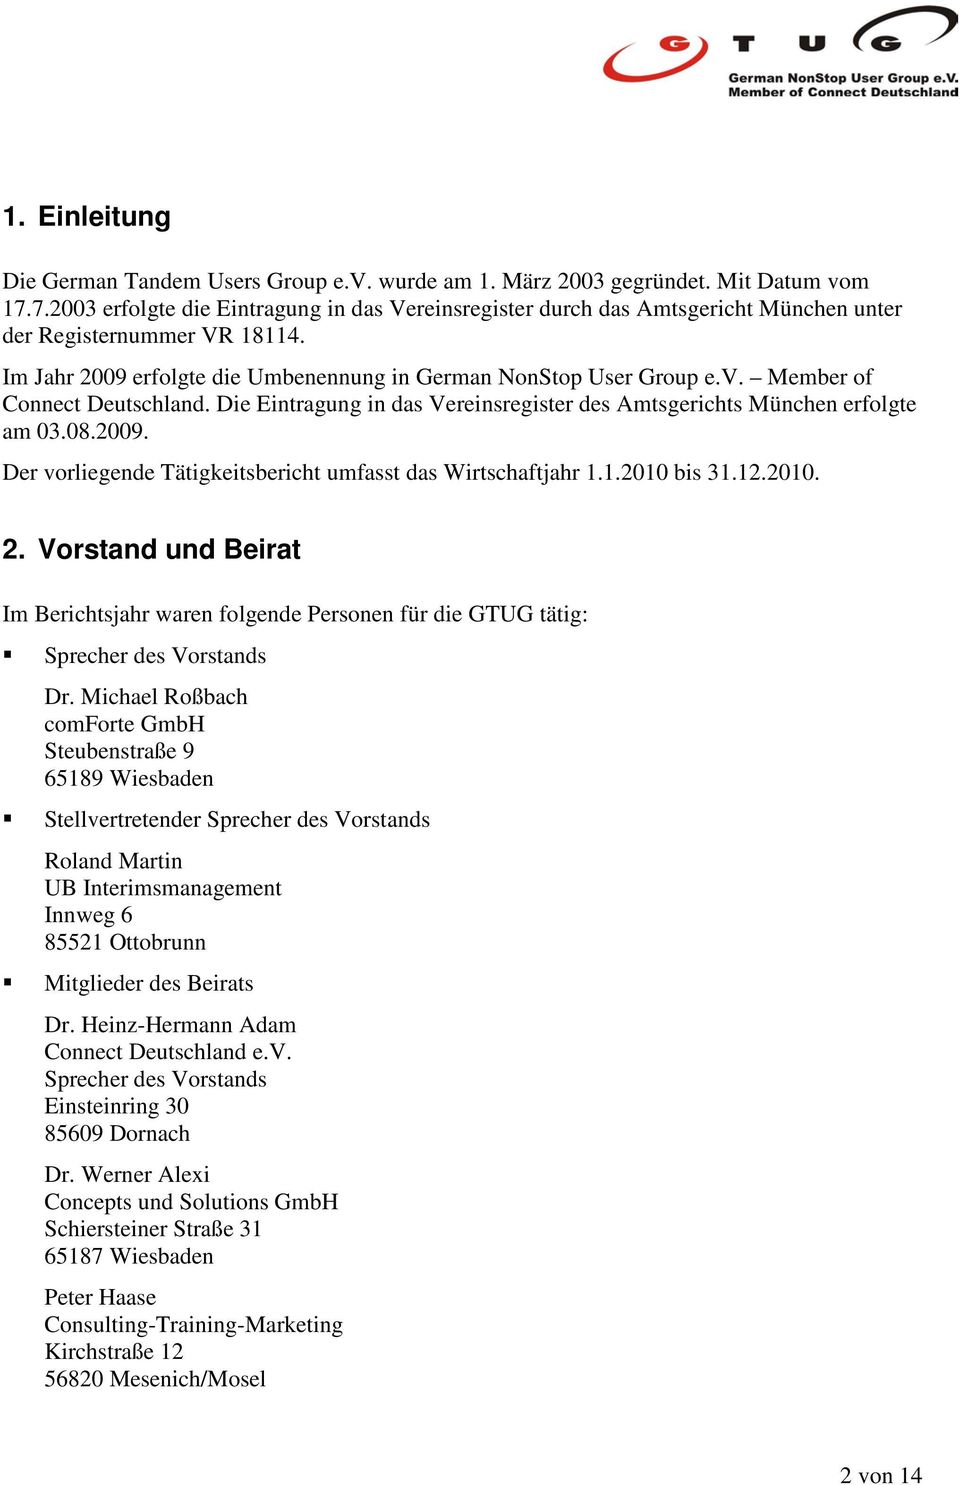 Member of Connect Deutschland. Die Eintragung in das Vereinsregister des Amtsgerichts München erfolgte am 03.08.2009. Der vorliegende Tätigkeitsbericht umfasst das Wirtschaftjahr 1.1.2010 bis 31.12.